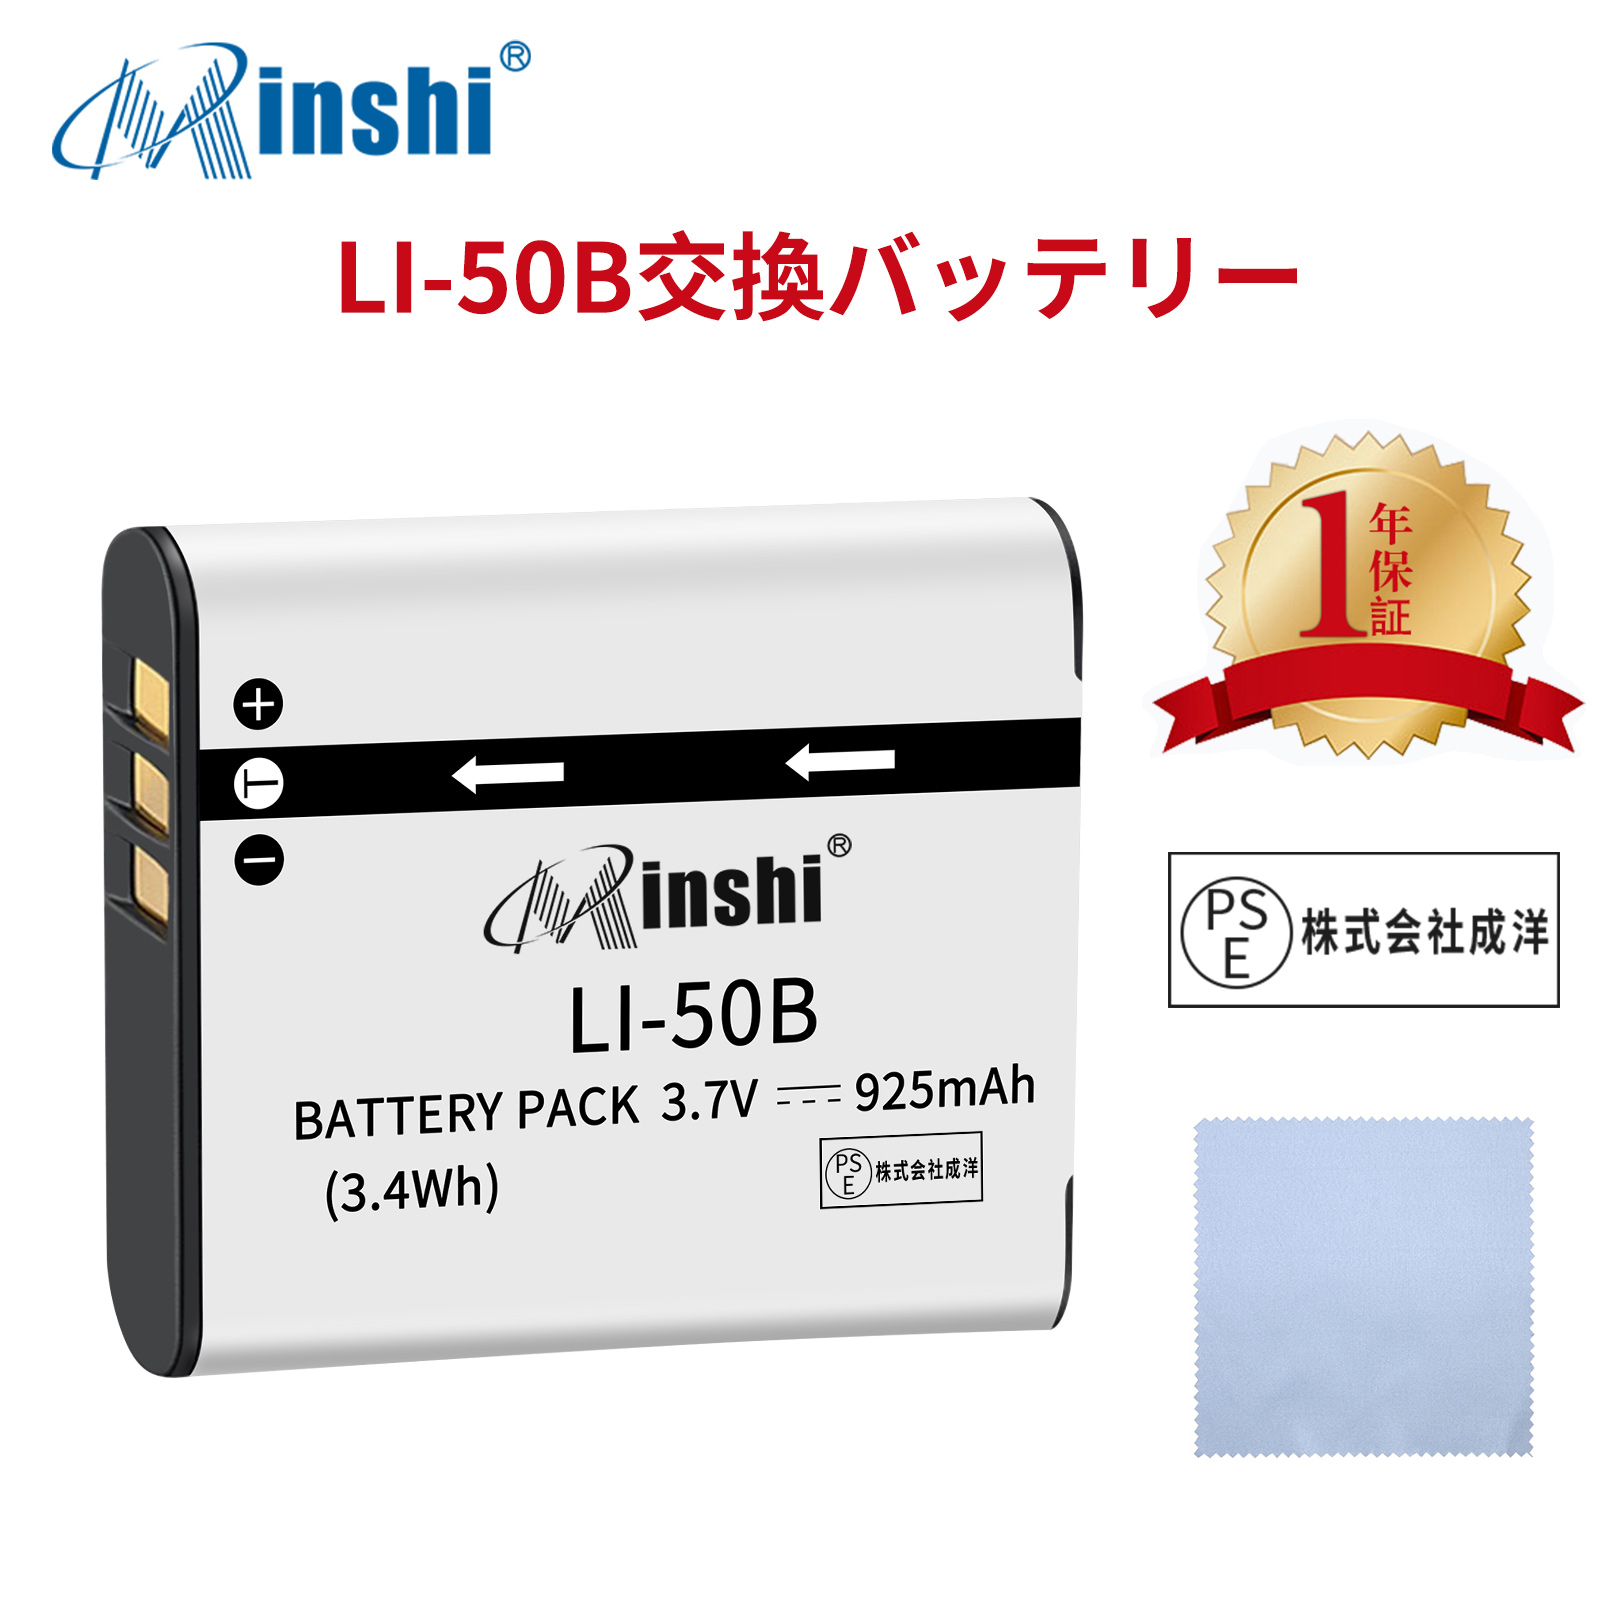 【清潔布ー付】minshi OLYMPUS TG-820 【925mAh 3.7V】PSE認定済 高品質 LI-50B 交換用バッテリー